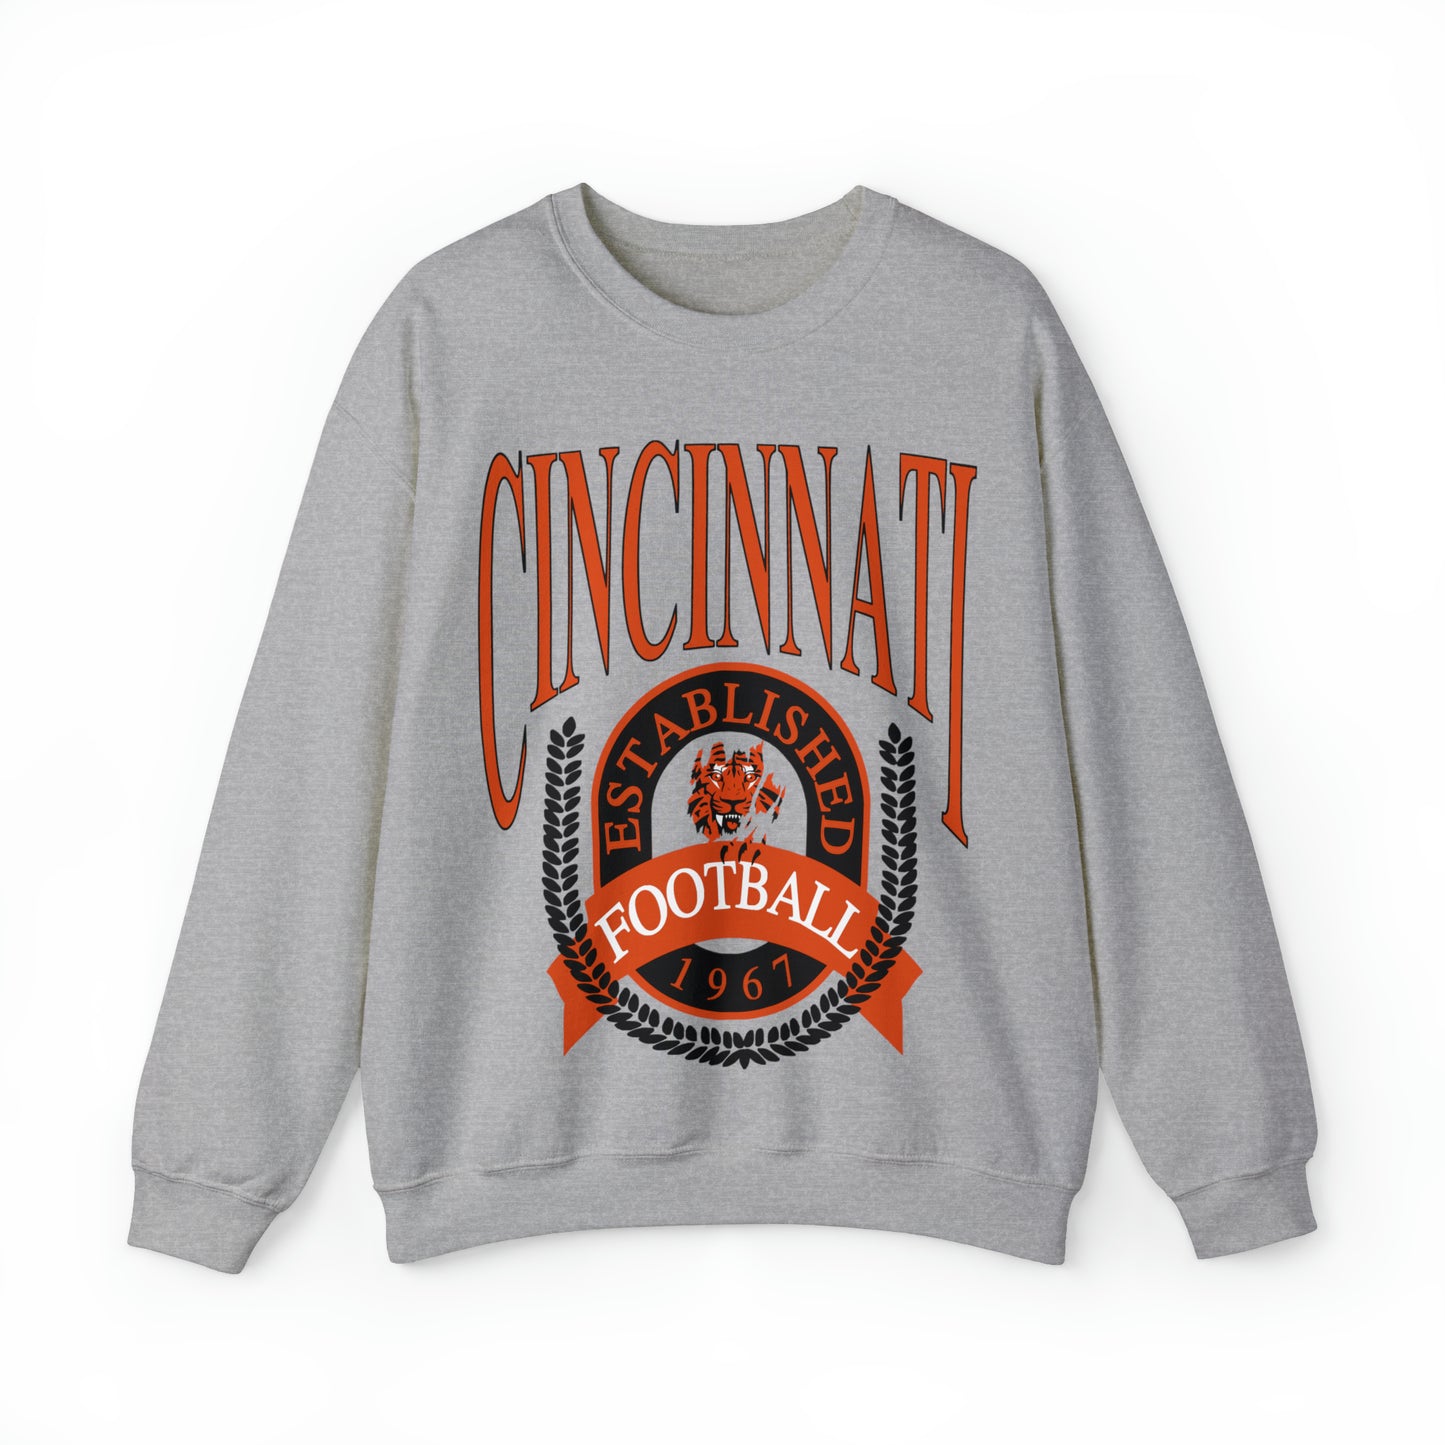 Vintage Cincinnati Bengals Crewneck Sweatshirt - Retro Men's & Women's Oversized NFL Football Unisex Hoodie - Design 1 Gray